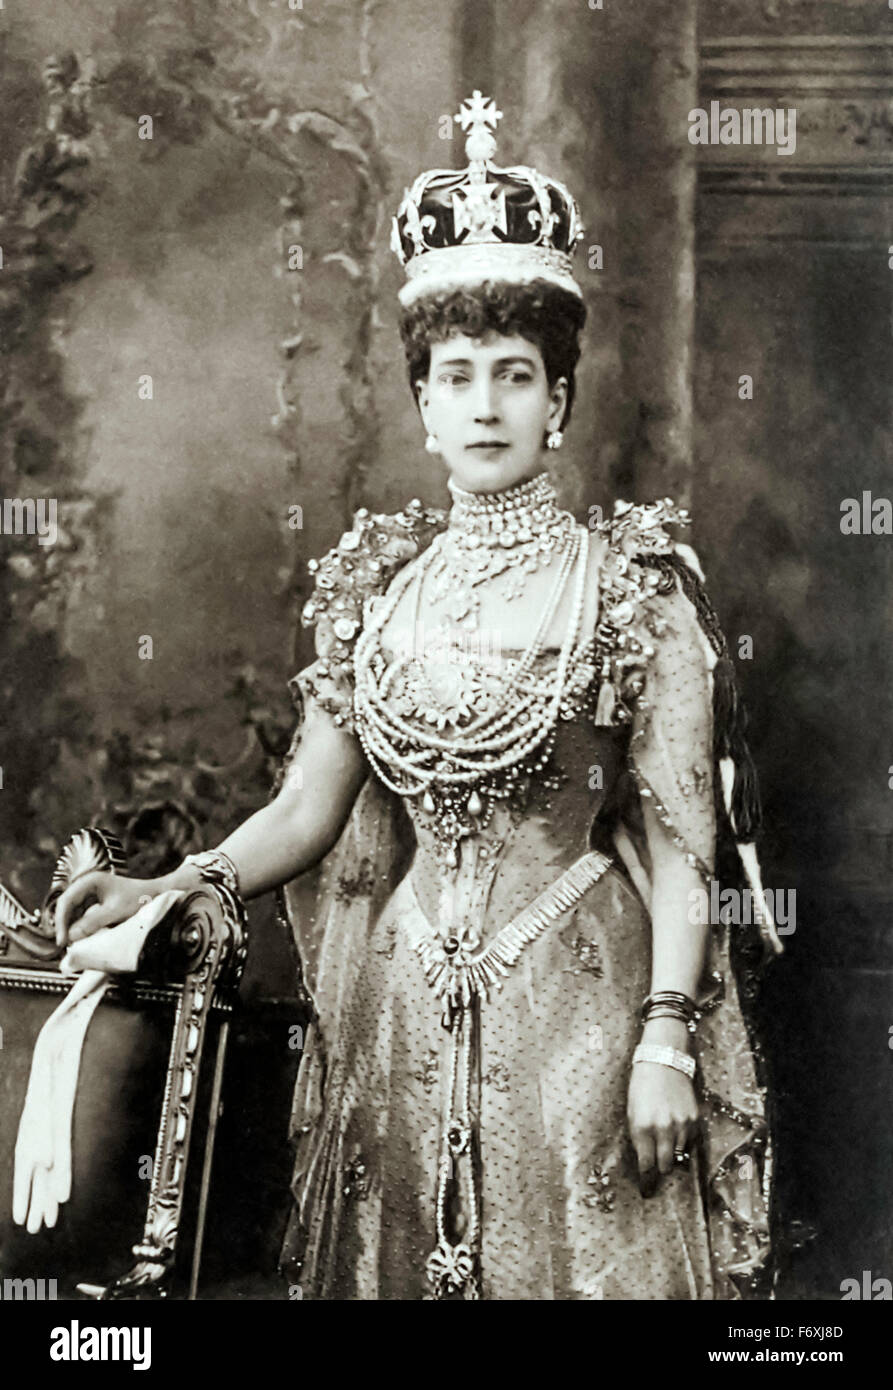 Ihre Majestät Königin Alexandra (1844-1925) (aka Alexandra von Dänemark) Queen Consort des Vereinigten Königreichs von Großbritannien und Irland sowie Kaiserin Consort von Indien als die Frau von König-Kaiser Edward VII. Fotografiert den Berg des Lichts oder Koh-i-Noor Diamant neu eingestellt in ihrer Krönung Krone am 9. August 1902. Stockfoto